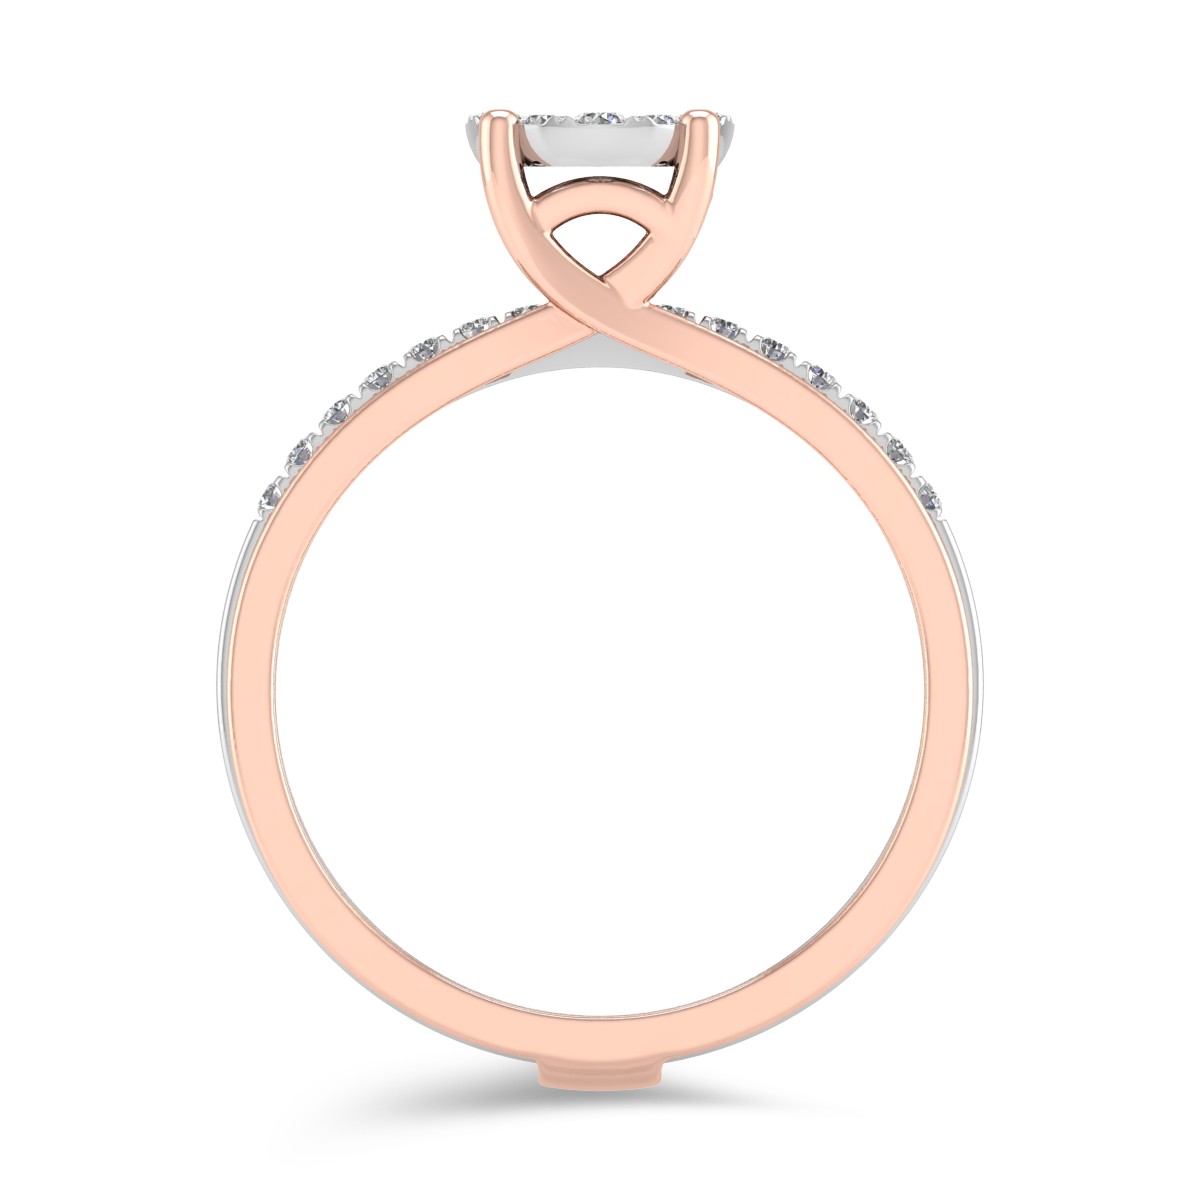 Eljegyzési gyűrű 18K-os fehér-rózsaszín aranyból 0.39ct gyémánttal. Gramm: 5,03